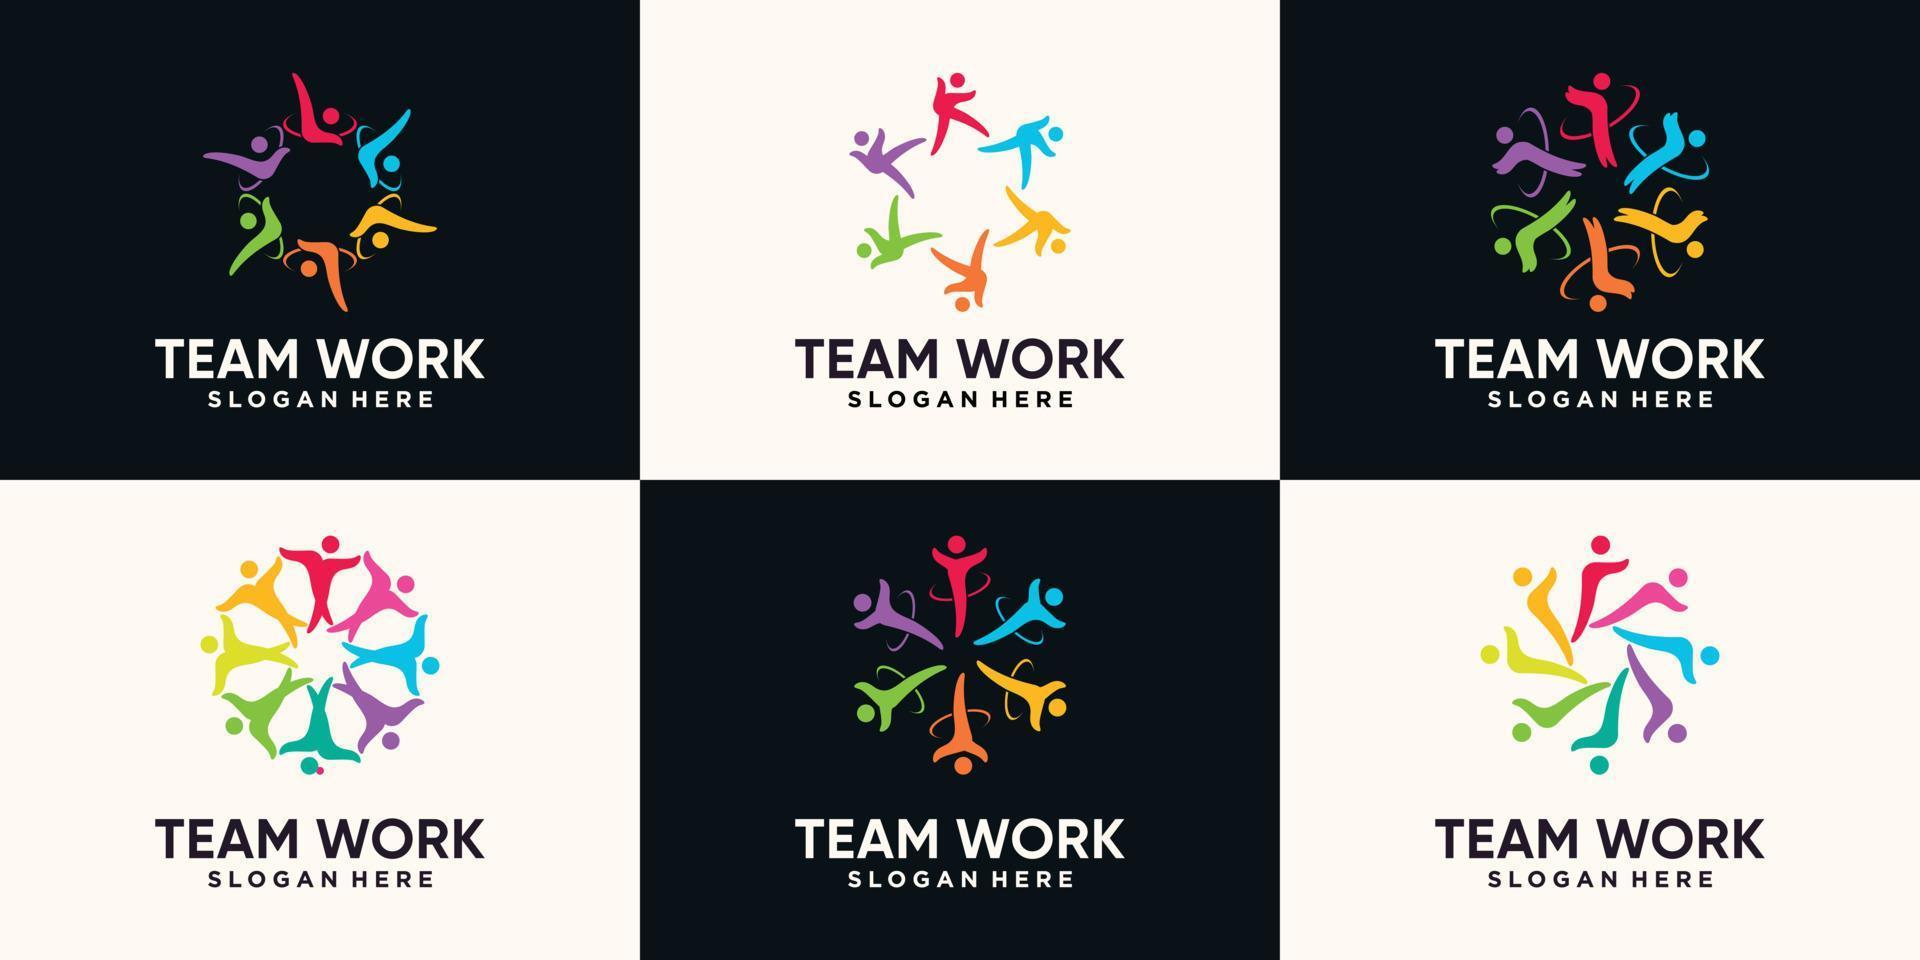 impostare il pacchetto di lavoro di squadra e il logo della comunità con un vettore premium di concetto unico creativo